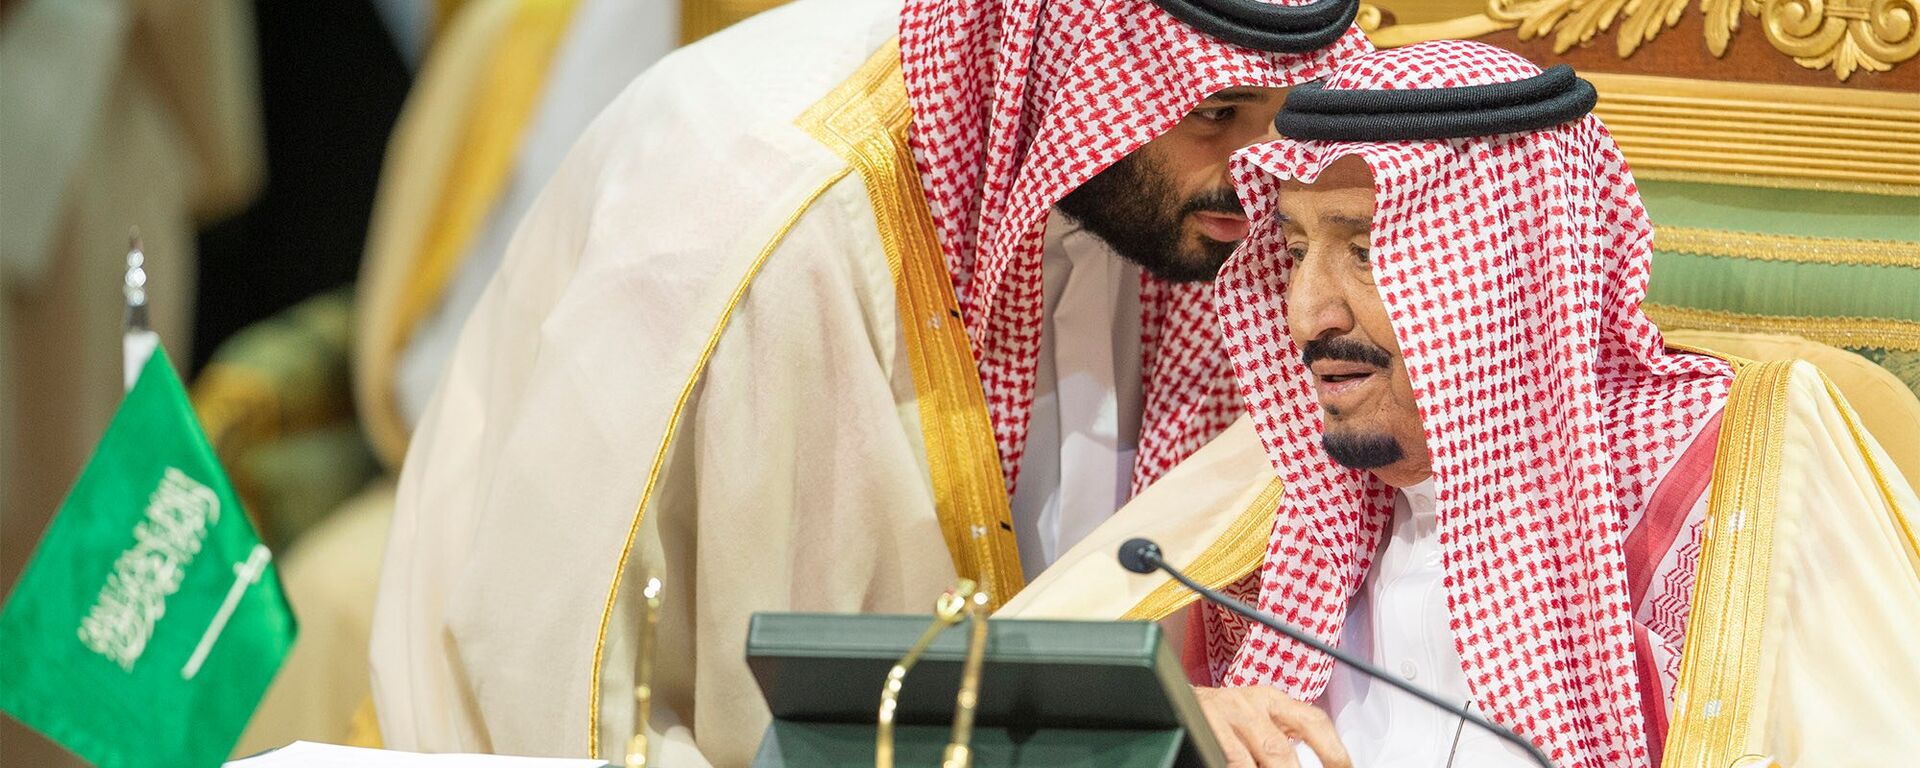 ولي العهد السعودي الأمير محمد بن سلمان يتحدث إلى العاهل السعودي الملك سلمان بن عبد العزيز آل سعود في افتتاح القمة الخليجية الـ 39 في الرياض، 9 ديسمبر/كانون الأول 2018 - سبوتنيك عربي, 1920, 06.05.2021